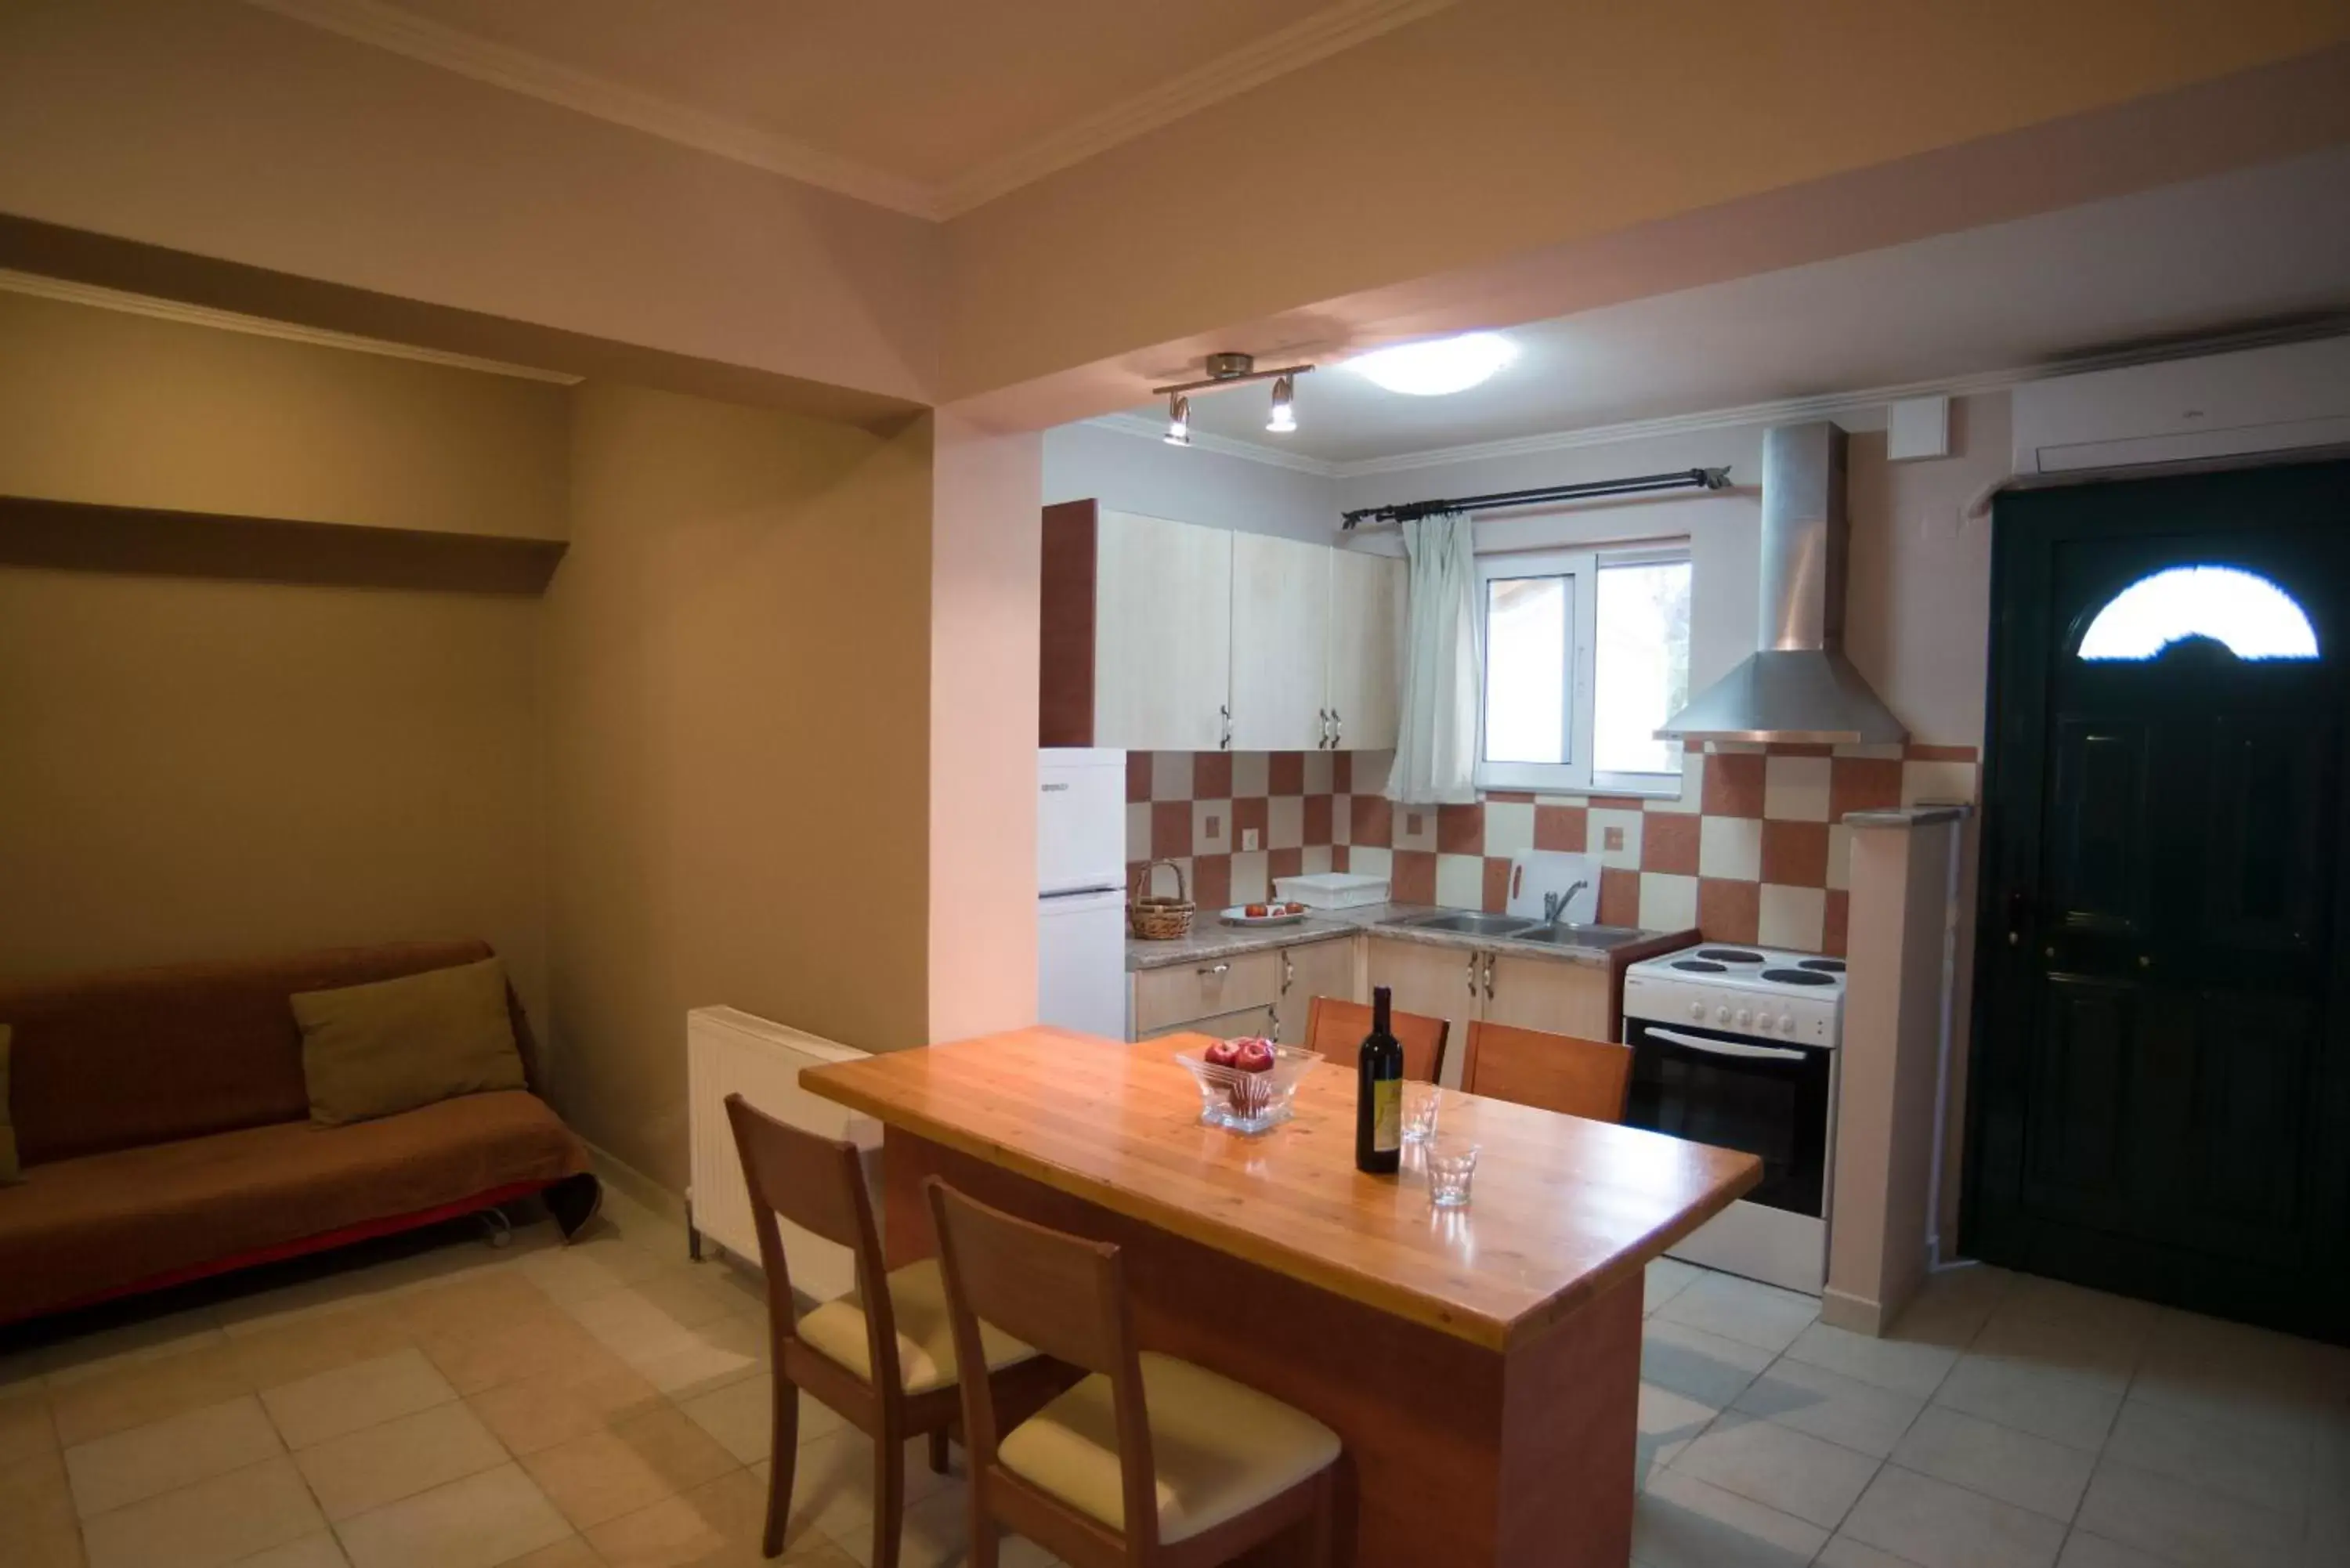 Kitchen or kitchenette, Dining Area in Villa Vita Holidays